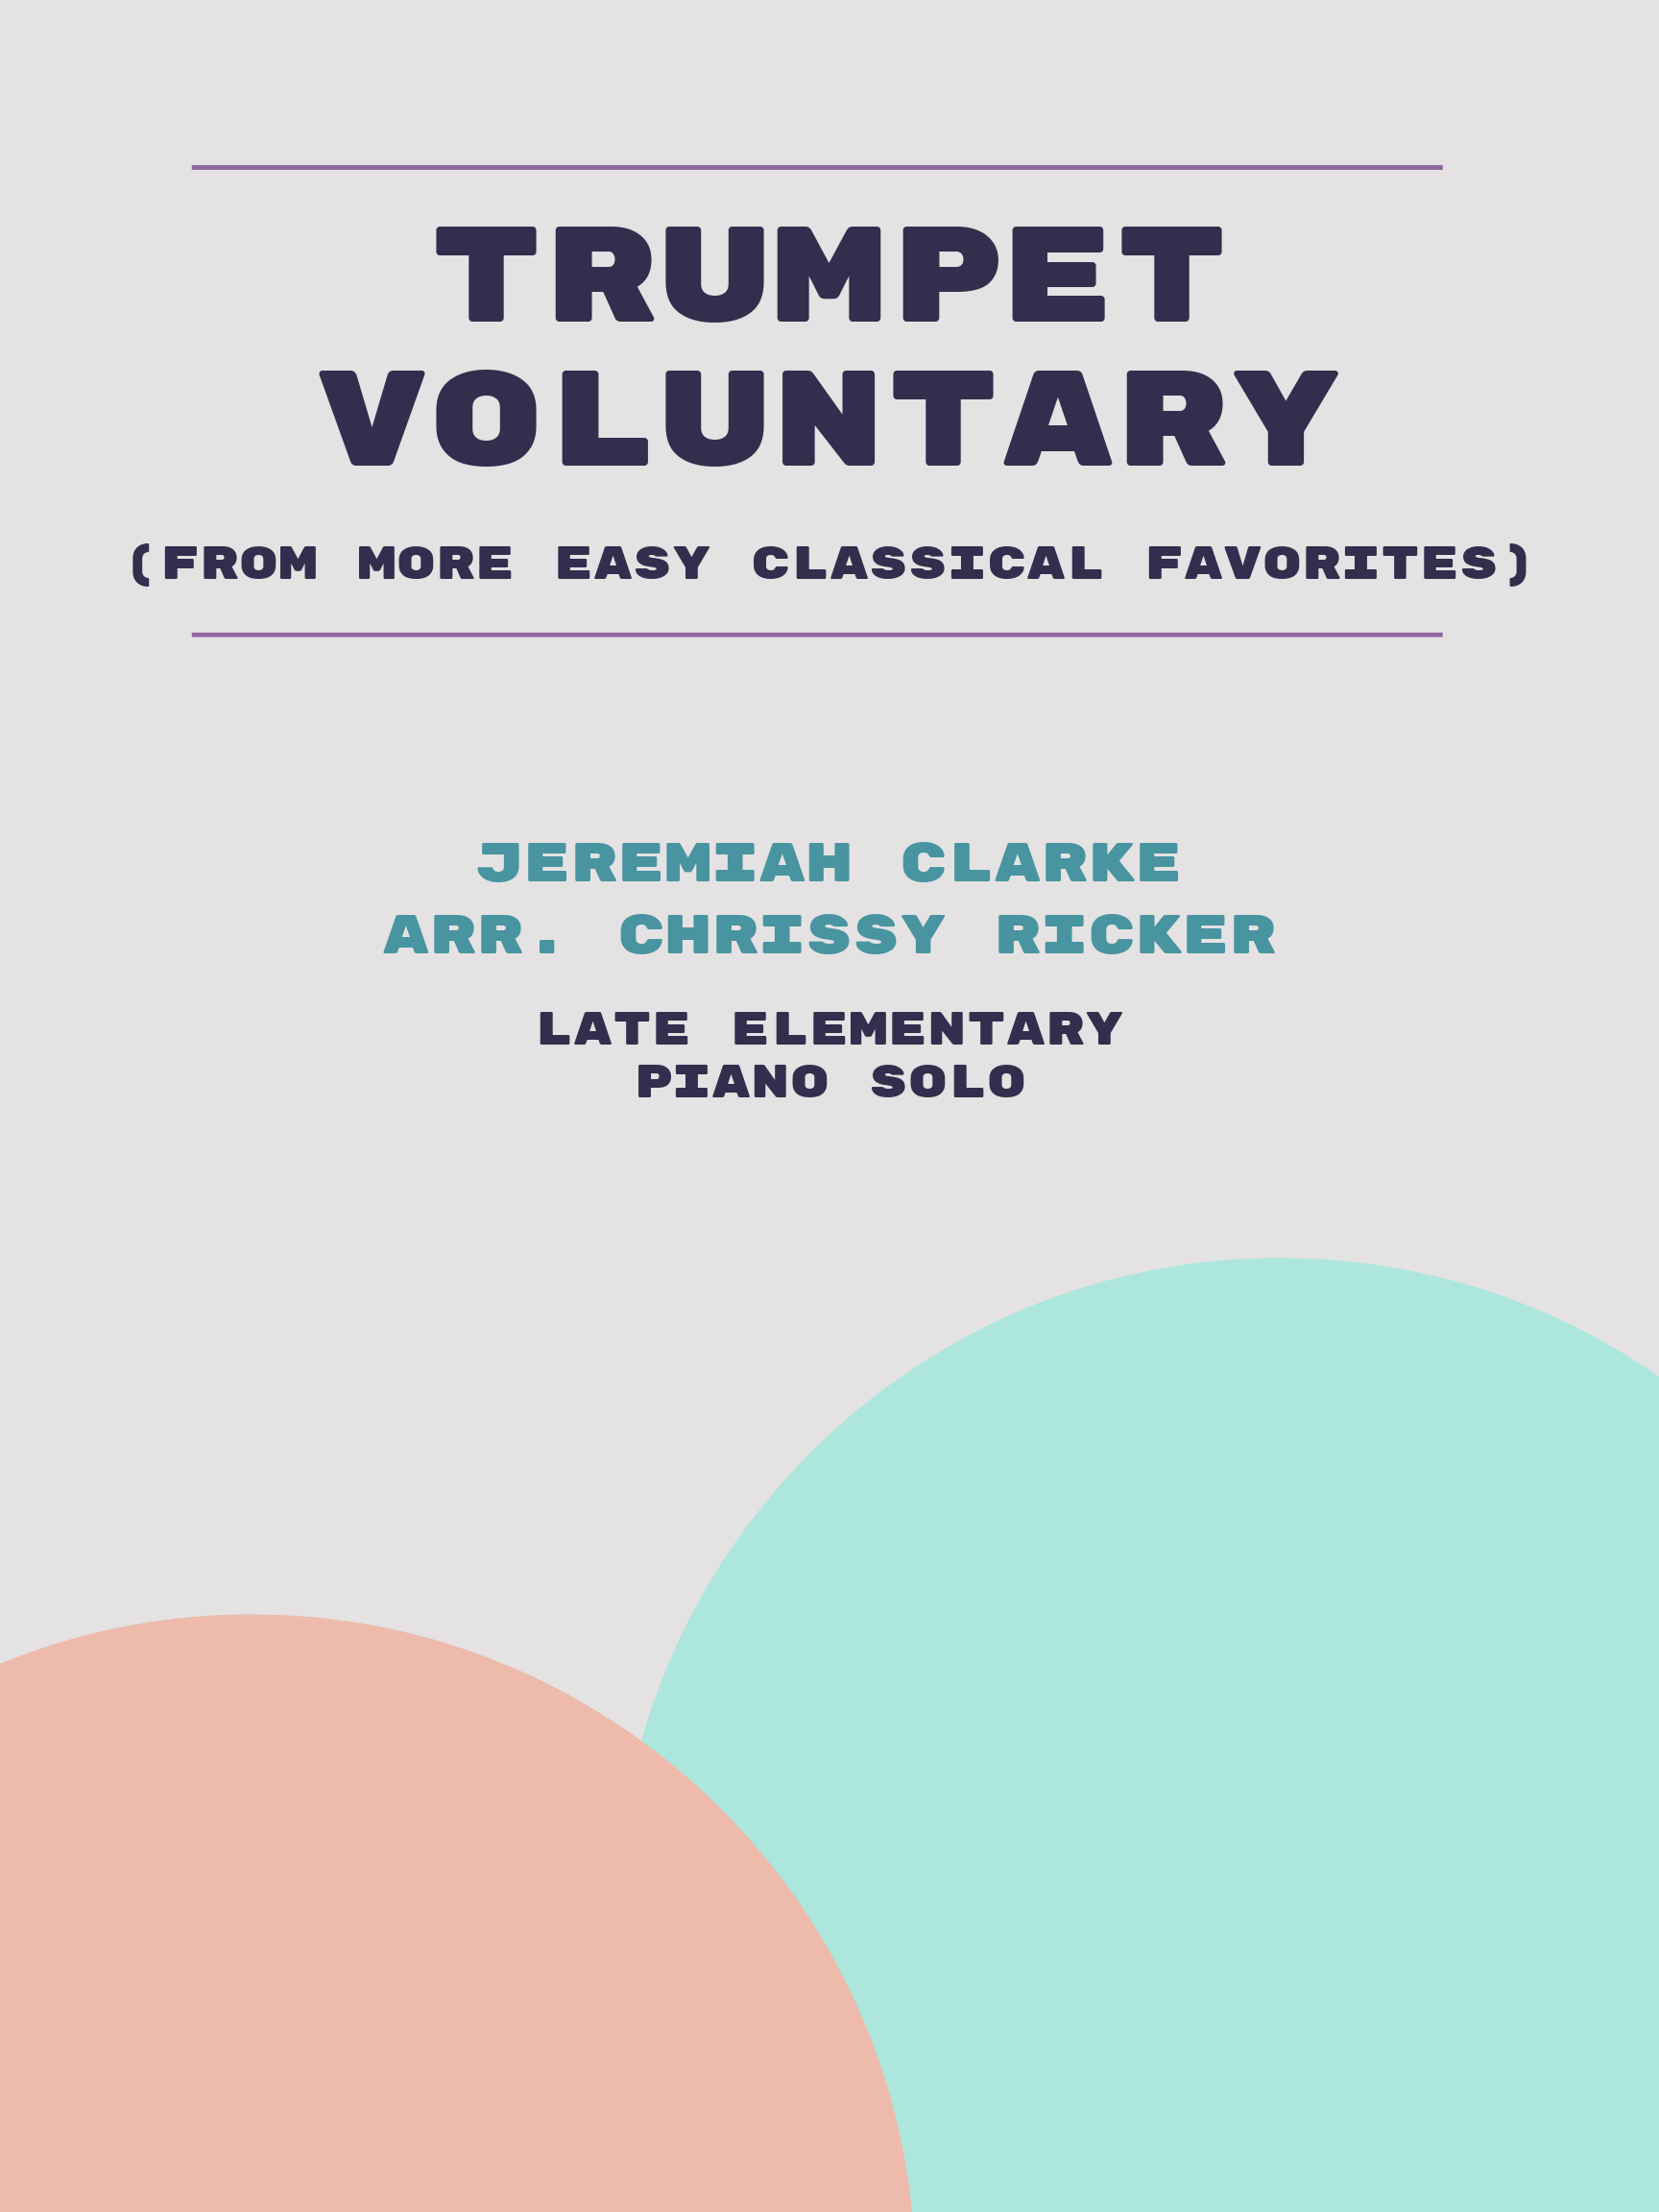 Trumpet Voluntary by Jeremiah Clarke